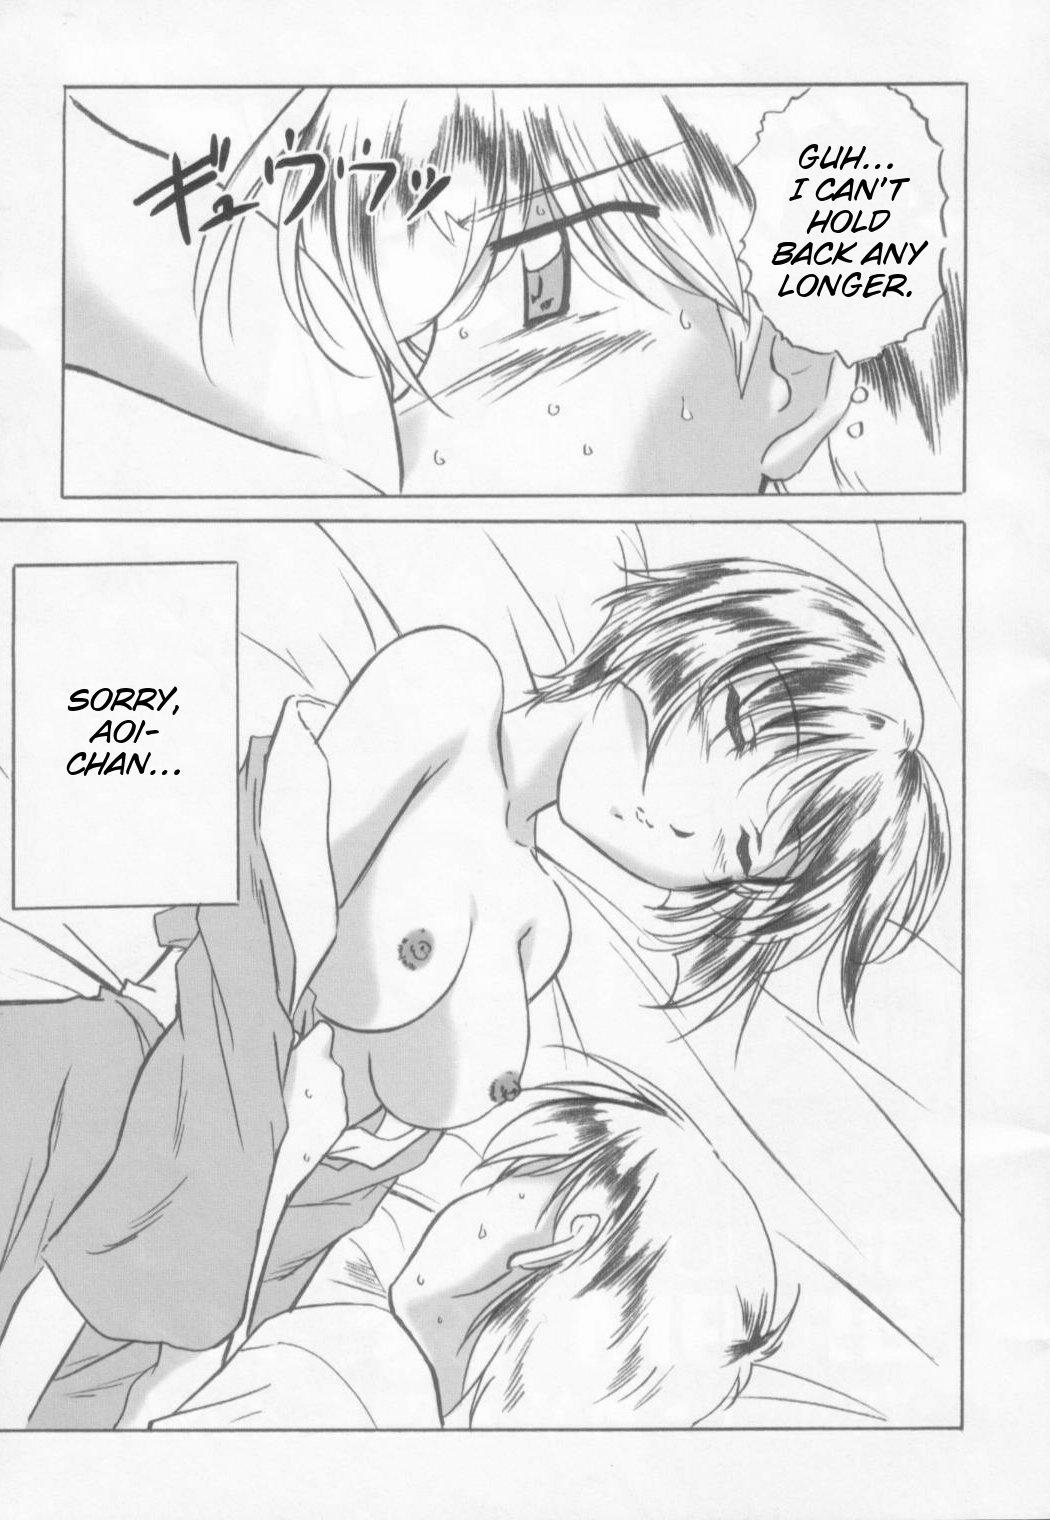 Big breasts Aoi-chan to... - Ai yori aoshi Sex - Page 4